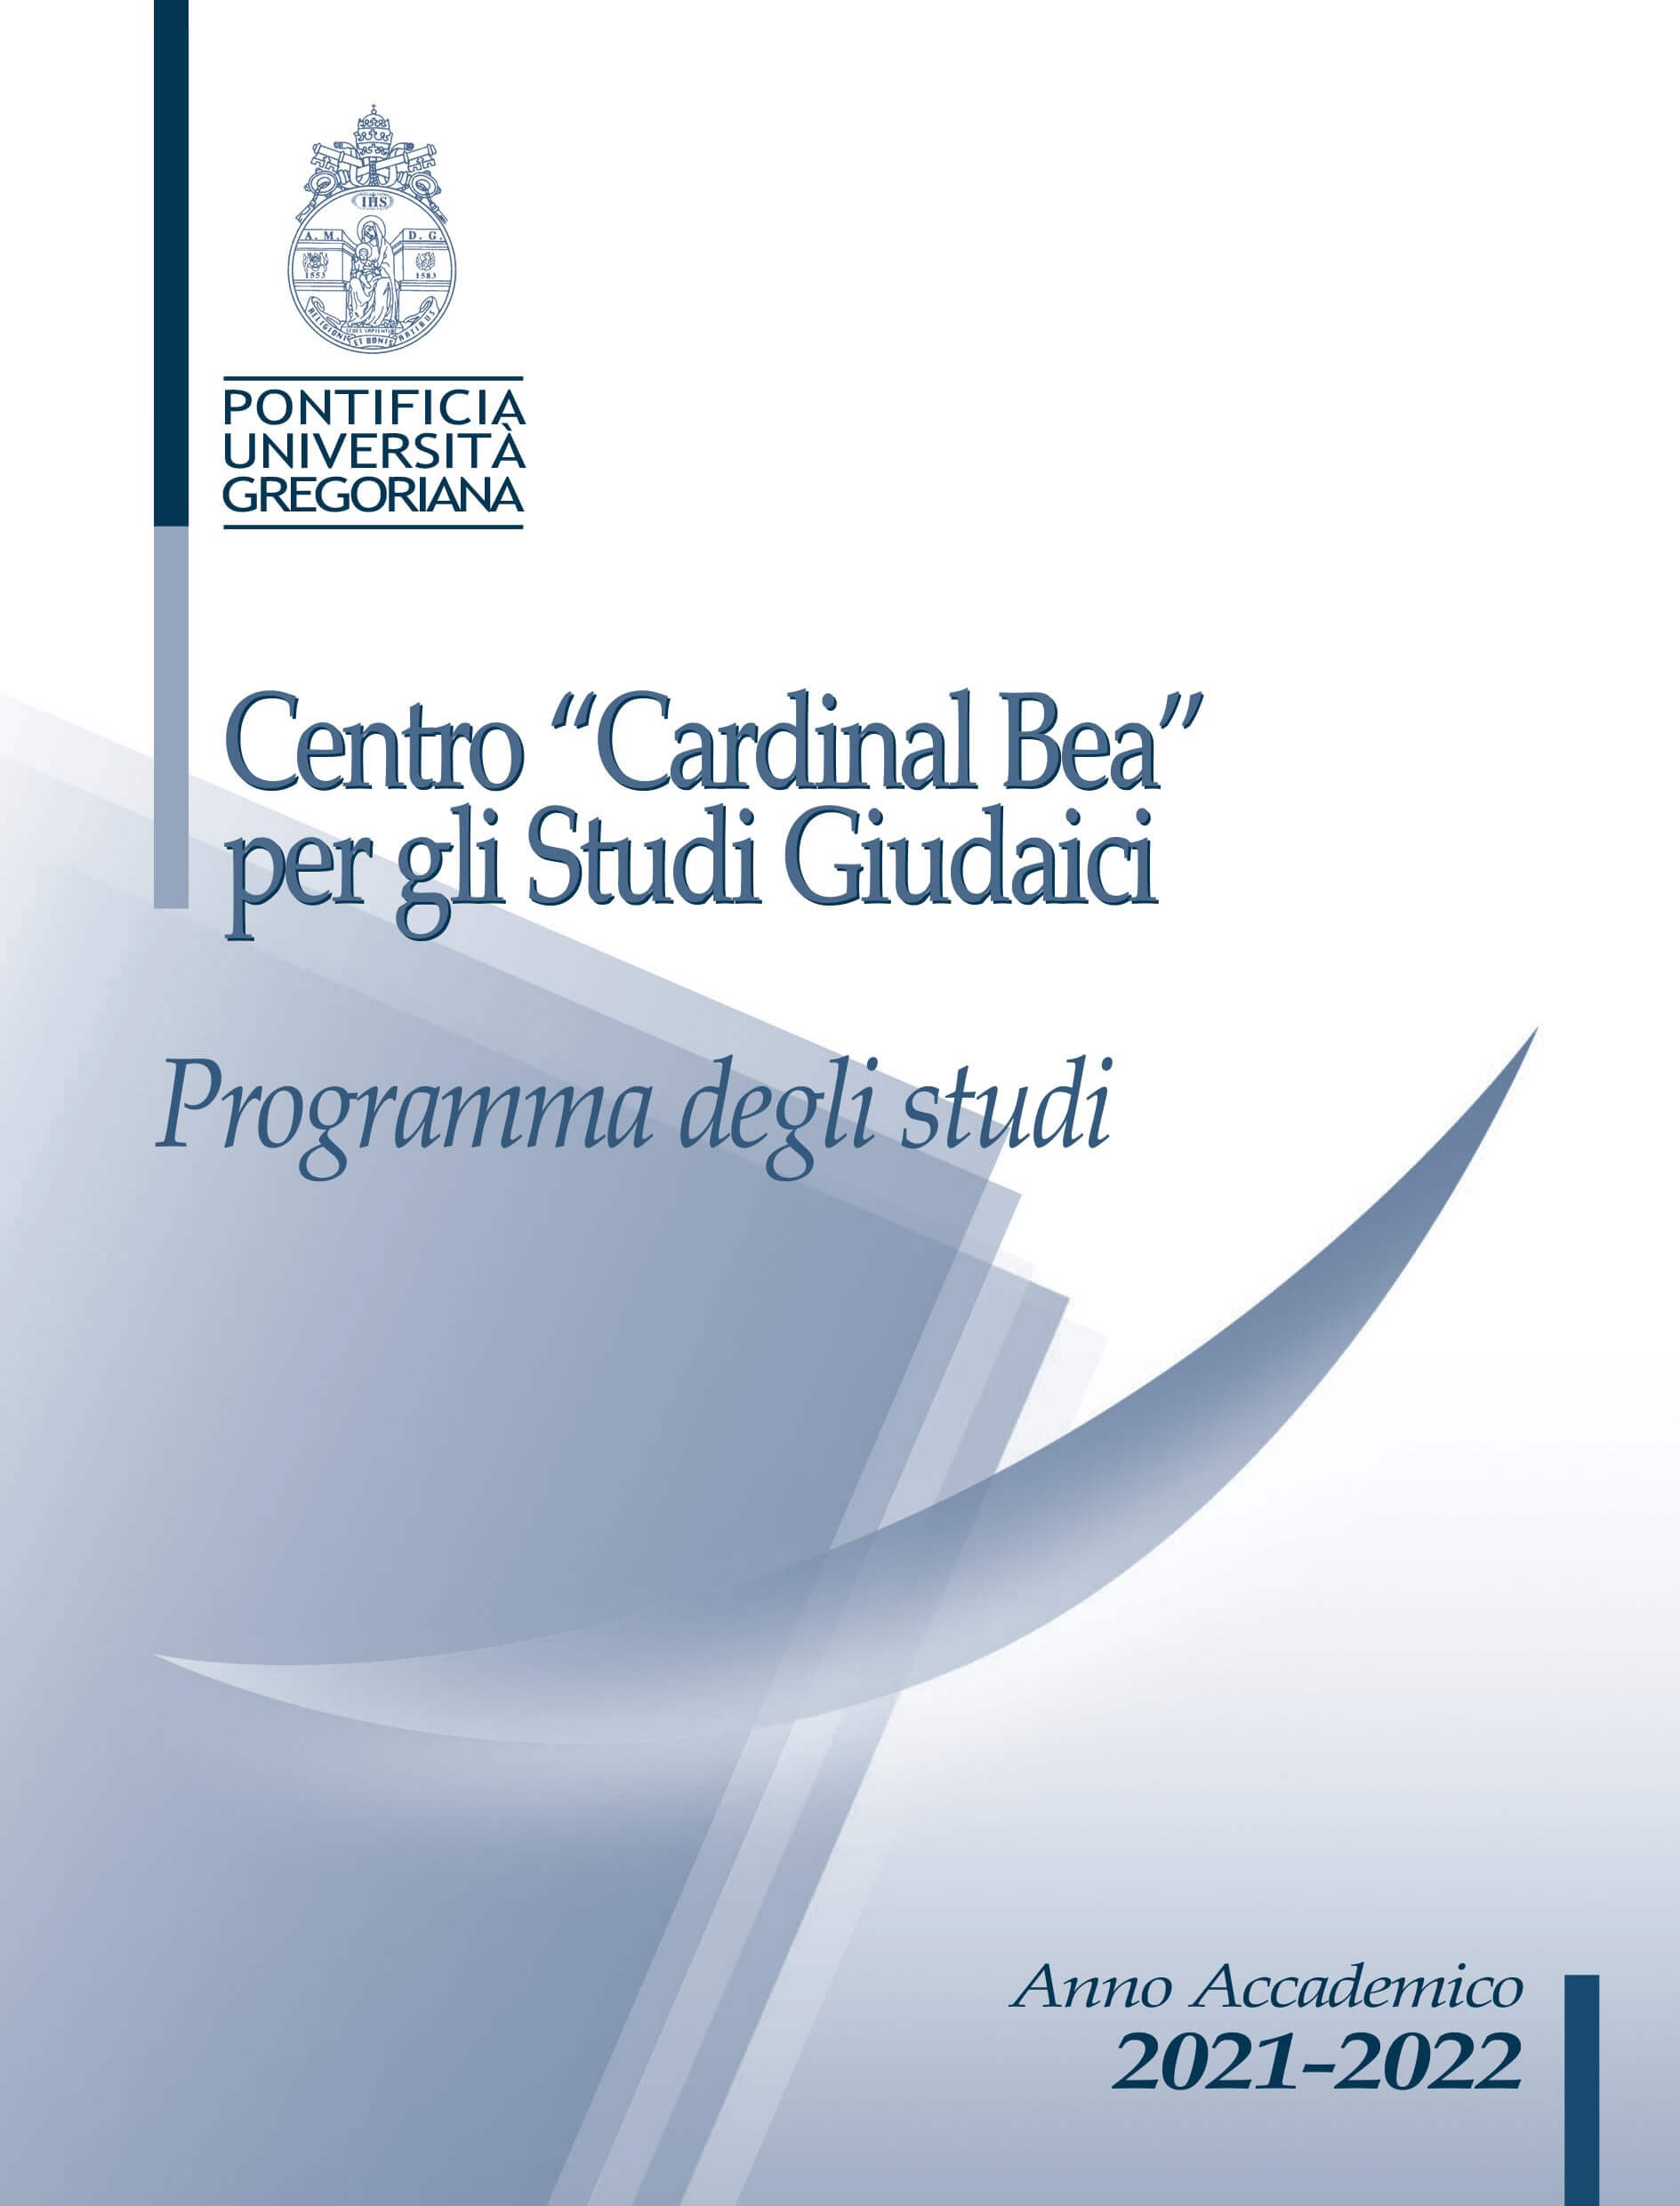 Centro "Cardinal Bea" per gli Studi Giudaici